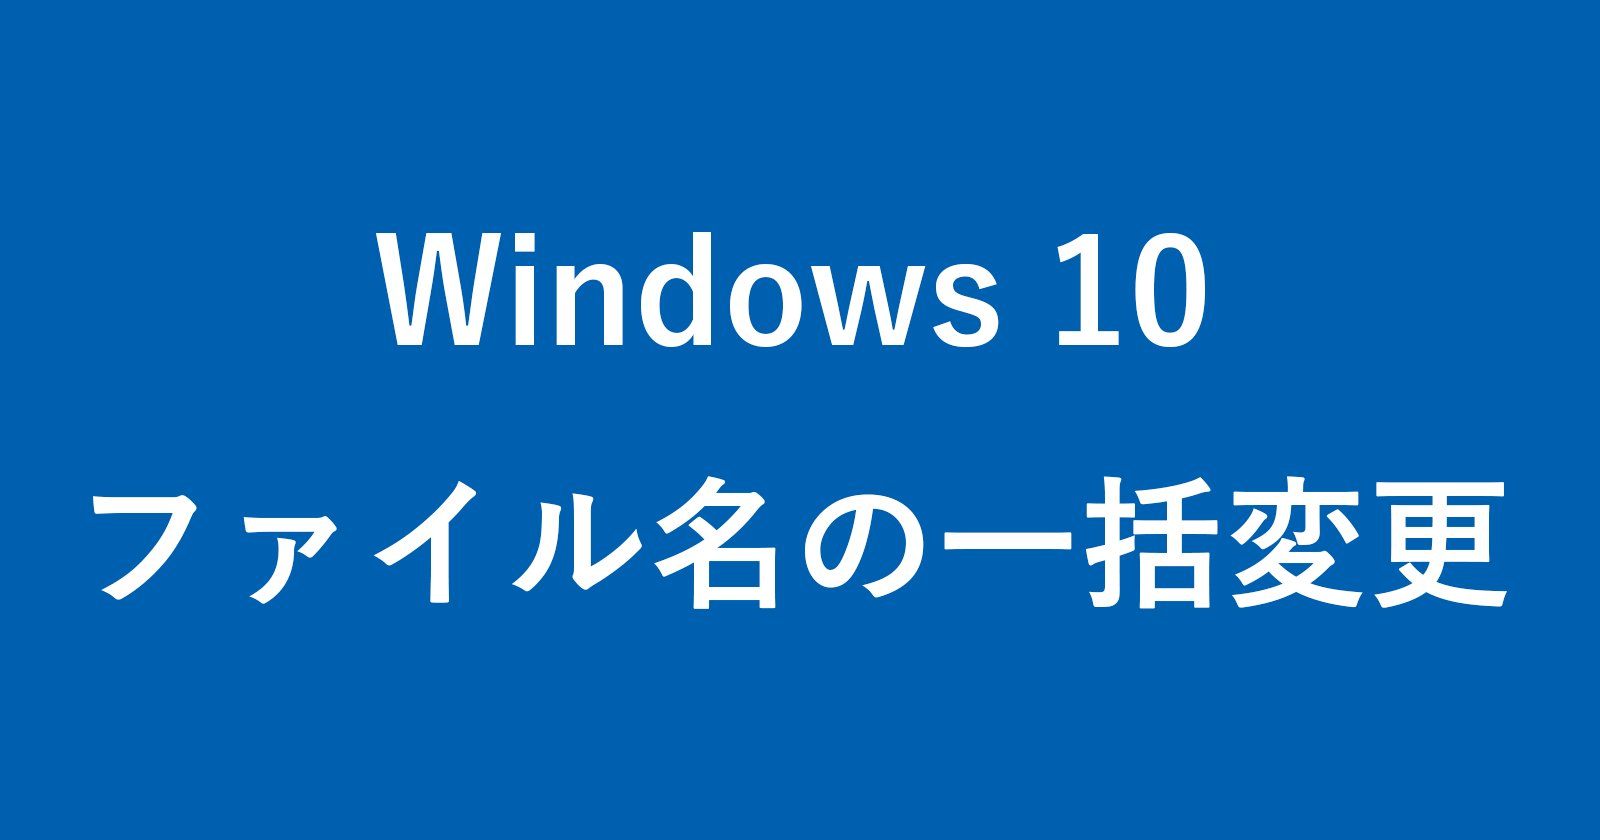 windows 10 rename